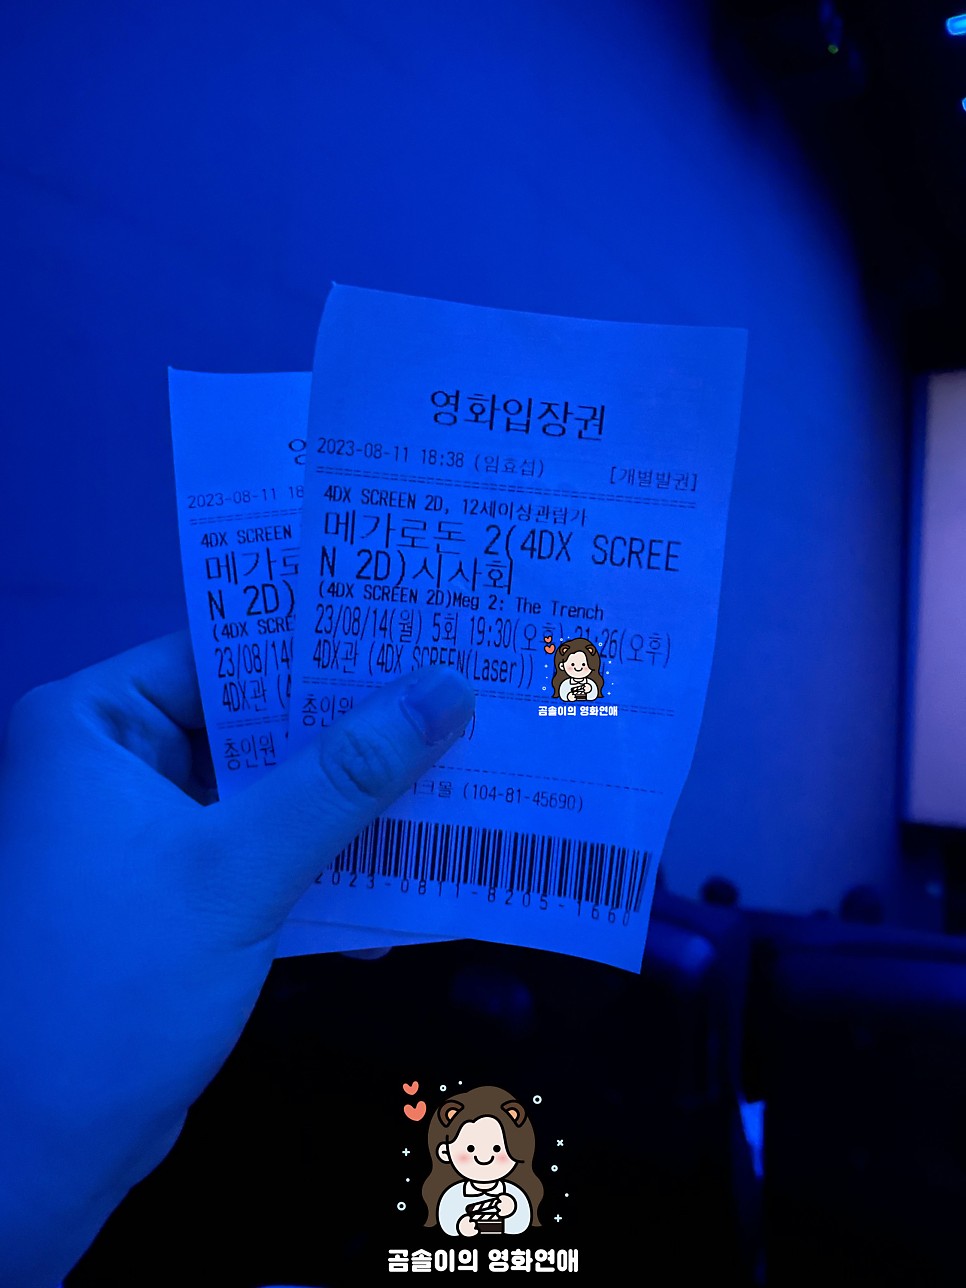 메가로돈 2 정보 후기 4DX Screen 제이슨 스타뎀 액션 영화